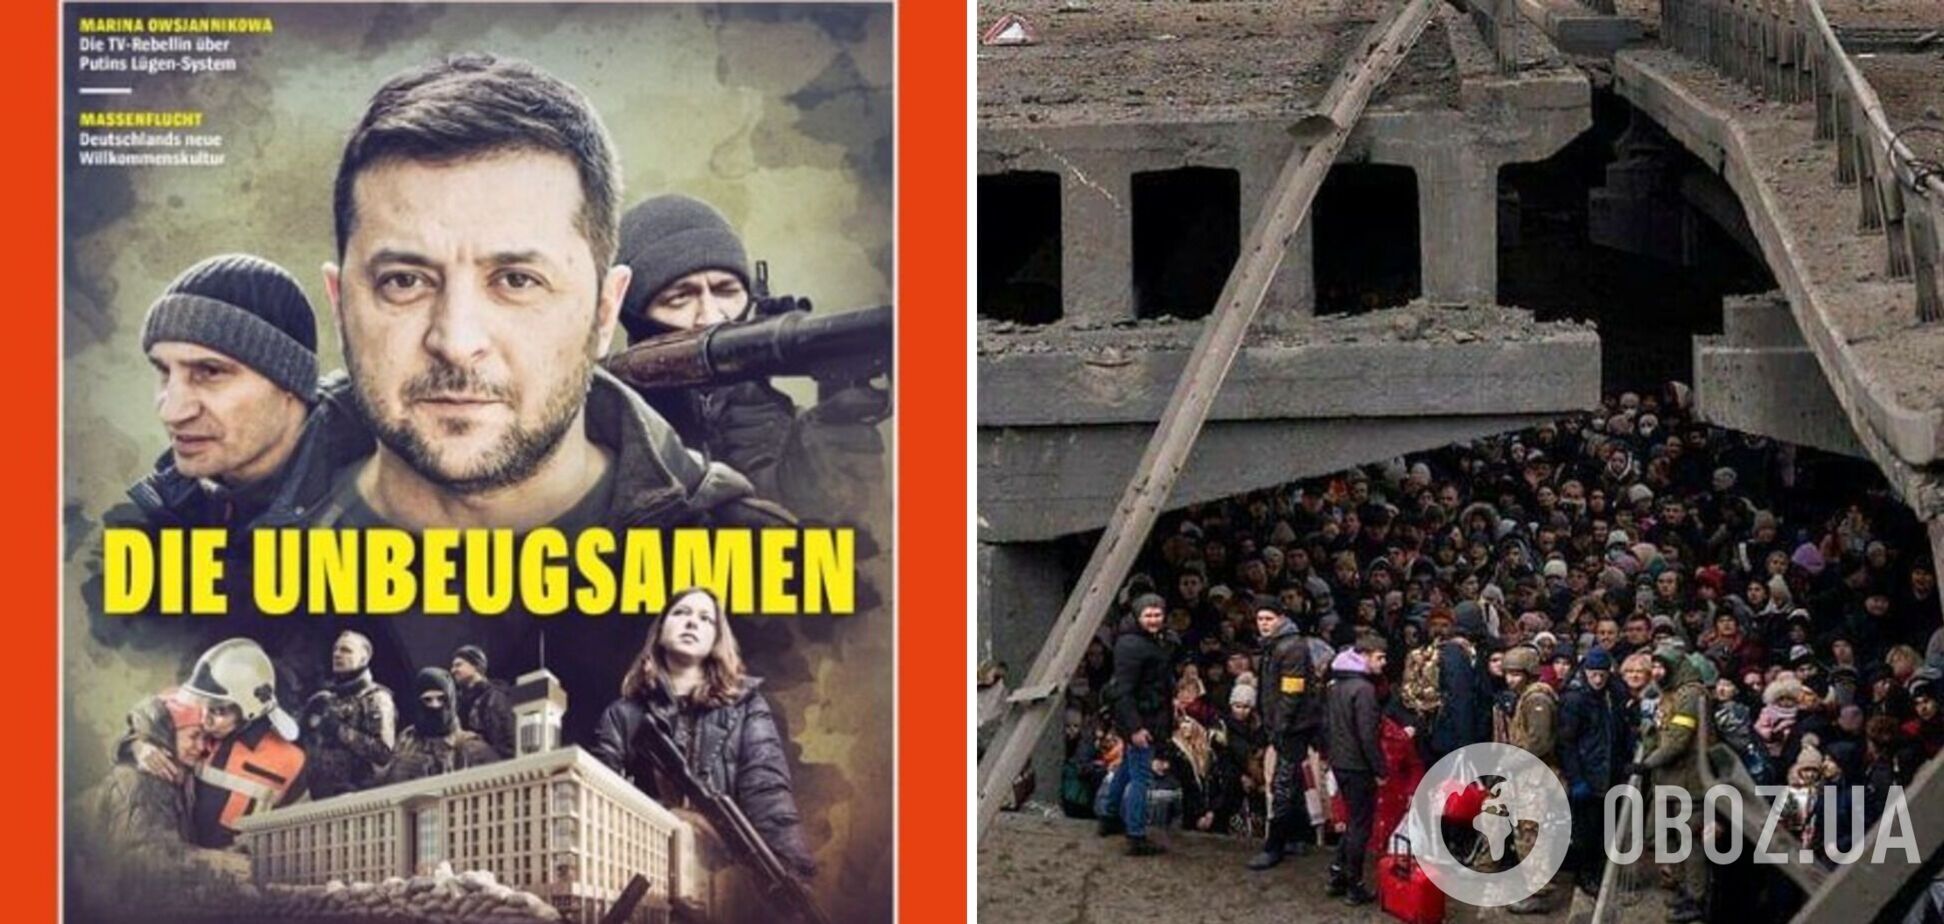 Der Spiegel посвятил свой новый номер событиям в Украине